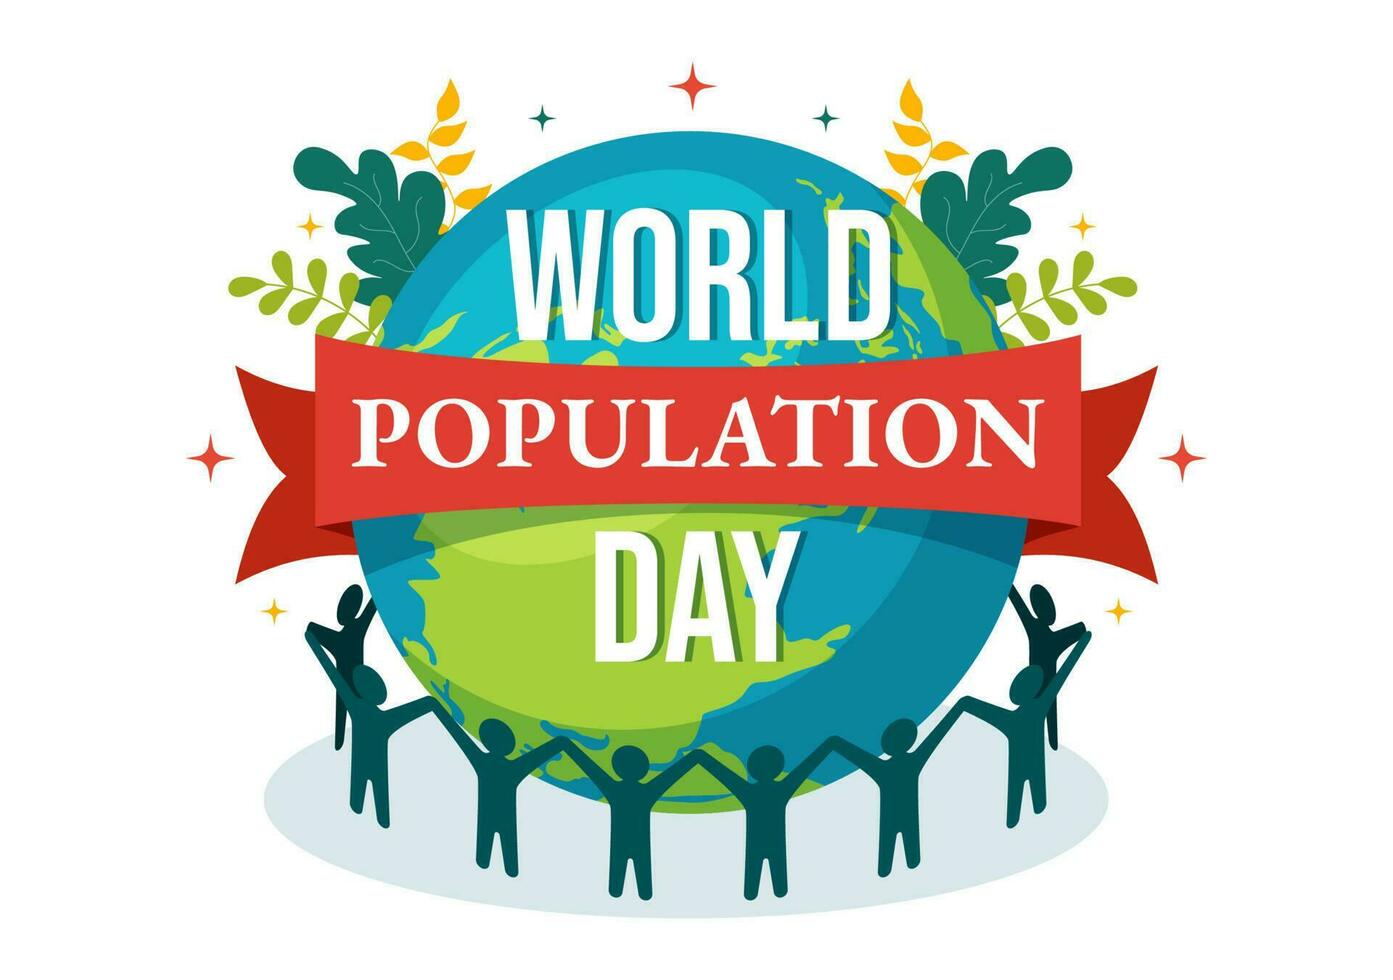 mundo población día vector ilustración en 11 julio a aumento conciencia de global poblaciones problemas en plano dibujos animados mano dibujado plantillas